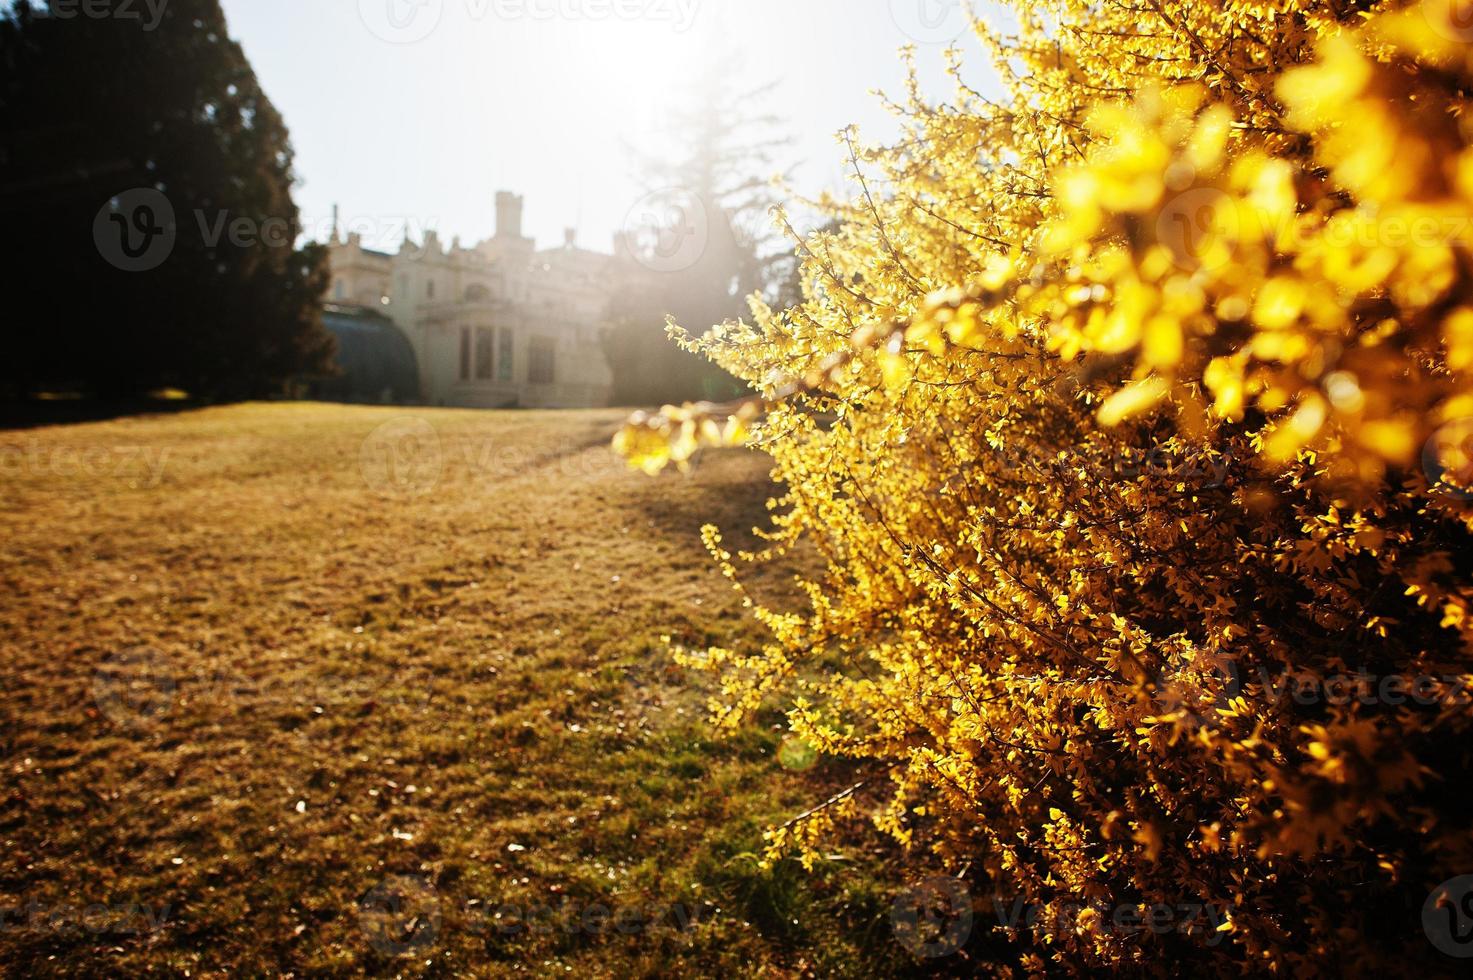 arbusto dourado contra lednice castelo chateau com belos jardins e parques no dia ensolarado de outono na morávia do sul, república tcheca, europa. foto